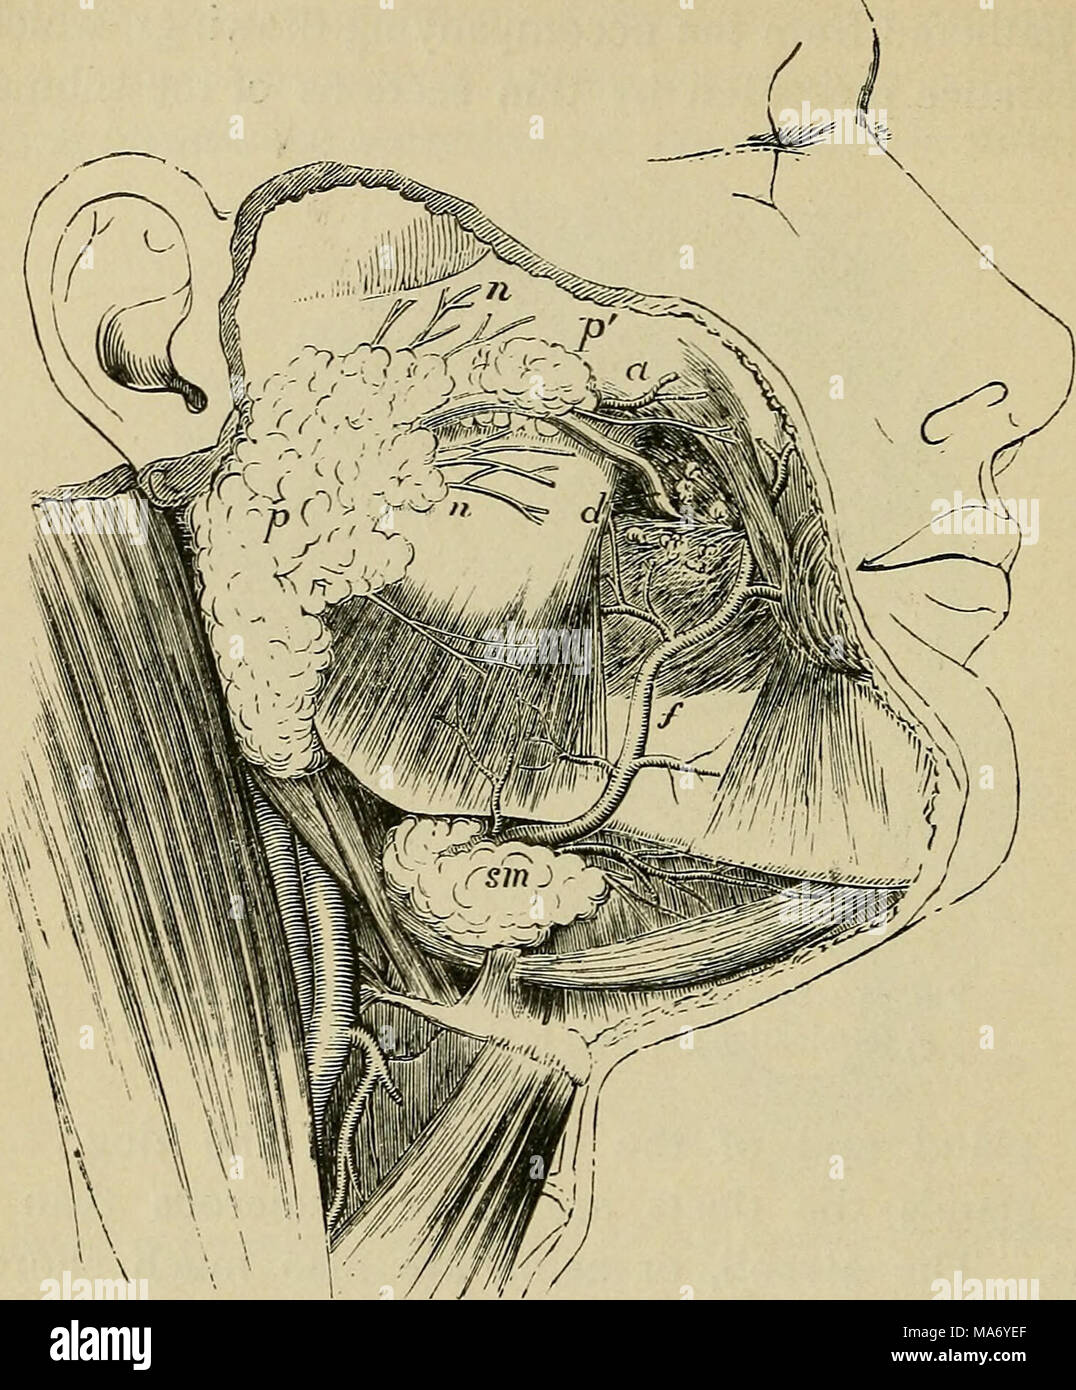 . Physiologie élémentaire . Fig. 71.-croquis d'un dissection superficielle de la face, montrant la position de la parotide et des glandes sous-maxillaires. (Allen Thomson.) | /, parotide ;/', sciences sociales ; parotidis d, le conduit de Stensen avant qu'il perfore la buccinator ; un muscle transverse de l'artère faciale, ; n, n, branches du nerf facial sortant de dessous du gland ; /, l'artère faciale sur le point d'une rainure dans la glande sous-maxillaire et croissant sur le visage ; S7n, partie superficielle de la glande sous-maxillaire. Son conduit (Stensen conduit l') laisse la glande à son bord antérieur, et court en avant Banque D'Images